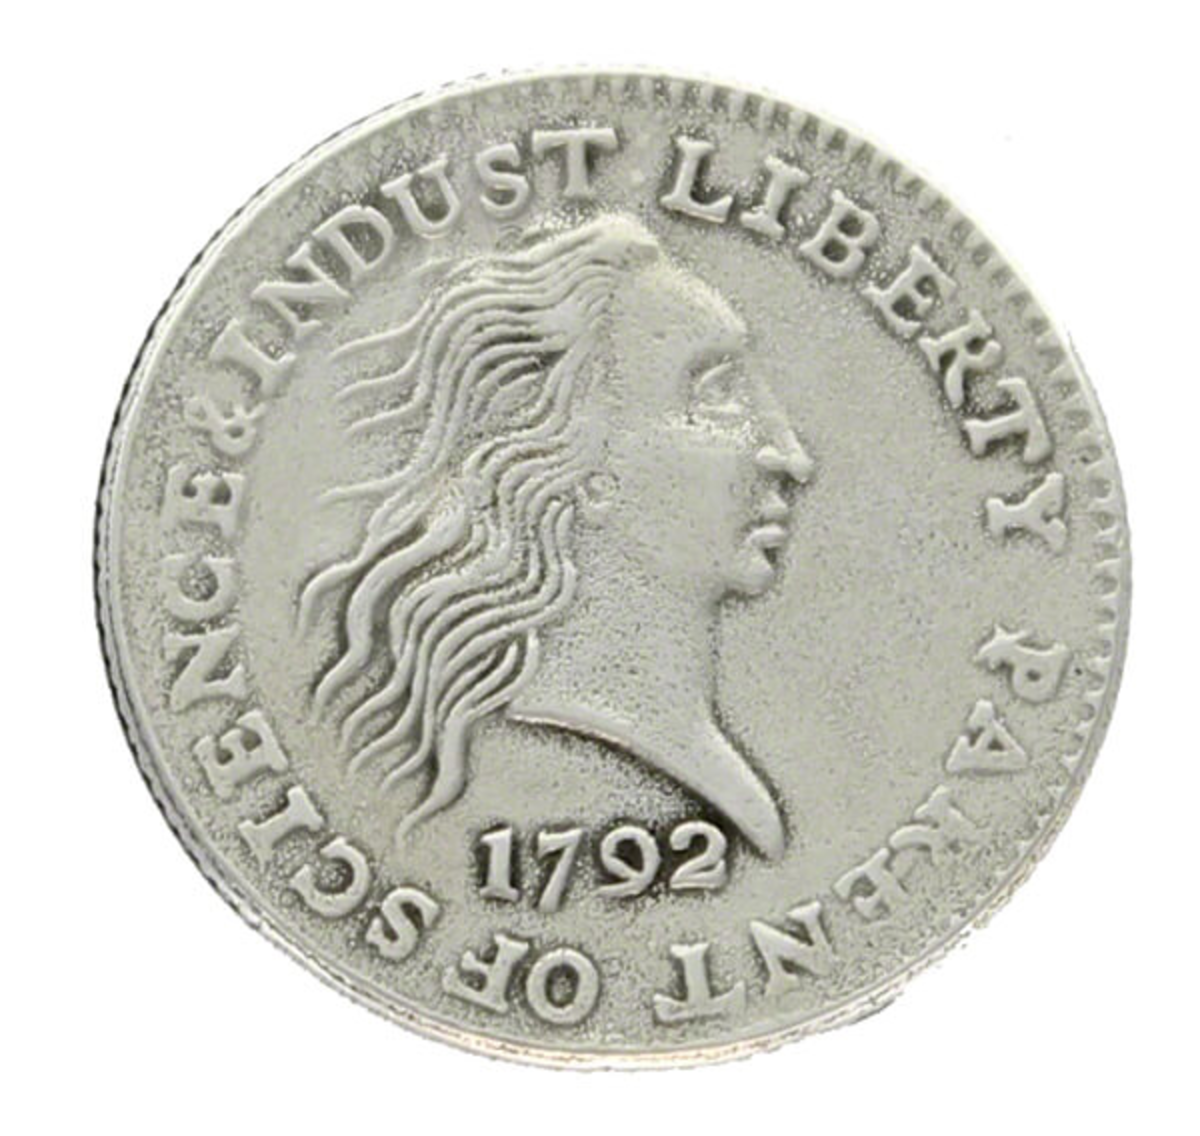 old coin 1972 iron coin